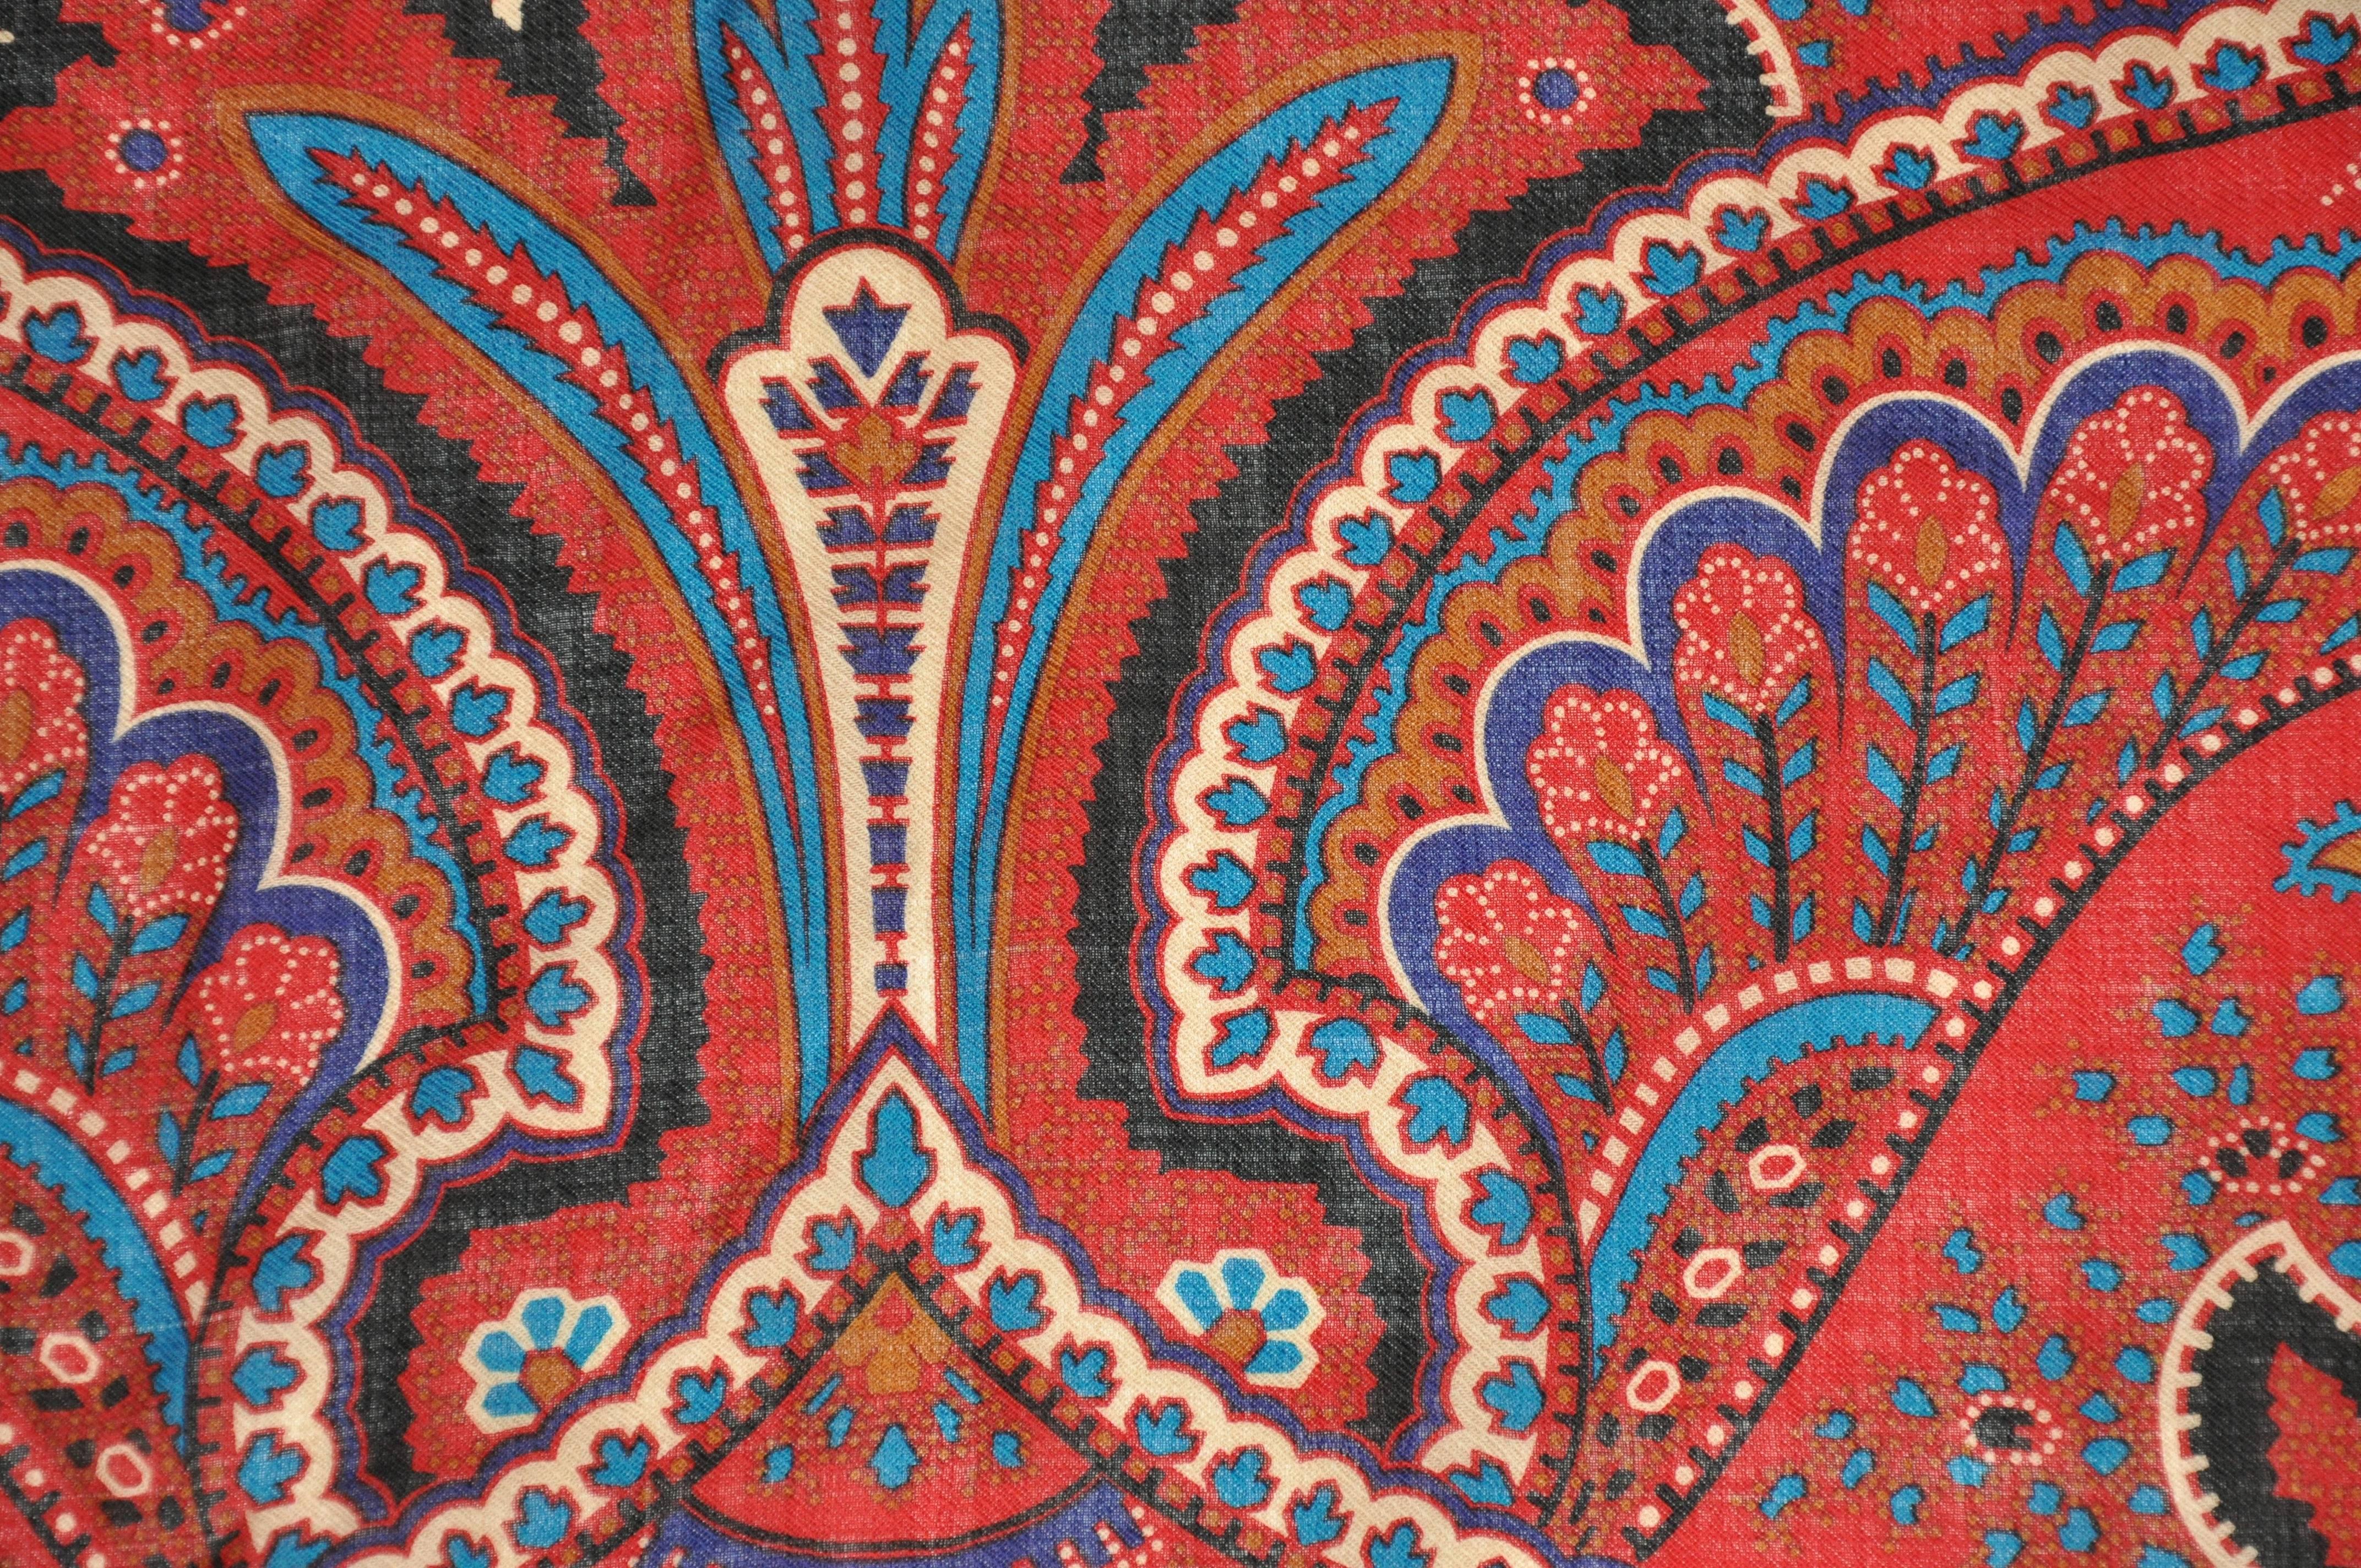        Le magnifique et élégant challis de laine Adrienne Vittadini à imprimé palsey multicolore est agrémenté de bords frangés et mesure 30 1/2